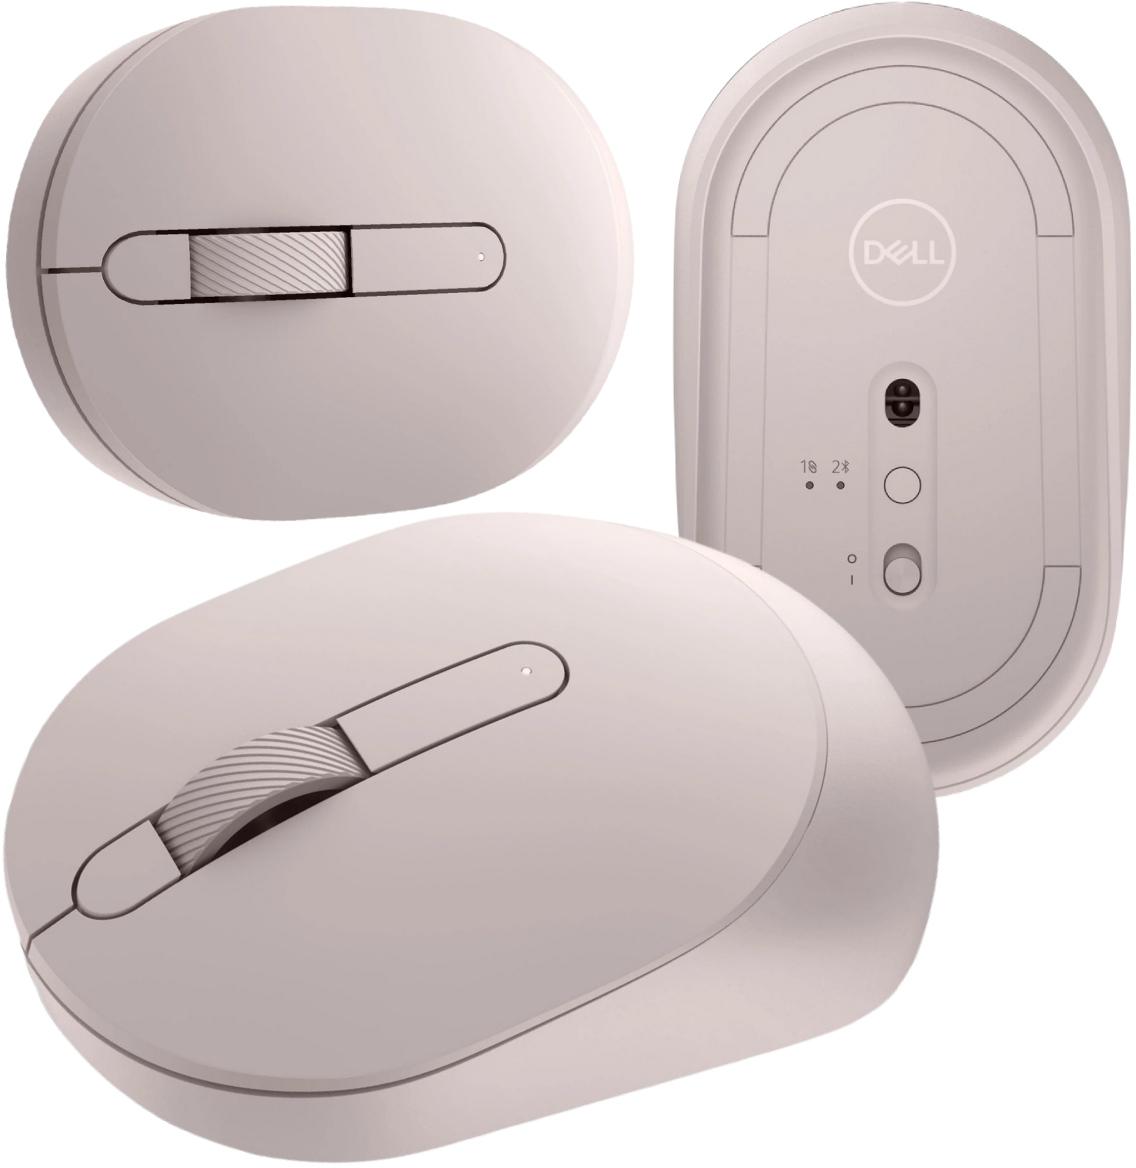 Bezprzewodowa mysz optyczna Dell MS3320W Mobile Wireless Mouse Ash Pink - najważniejsze cechy: